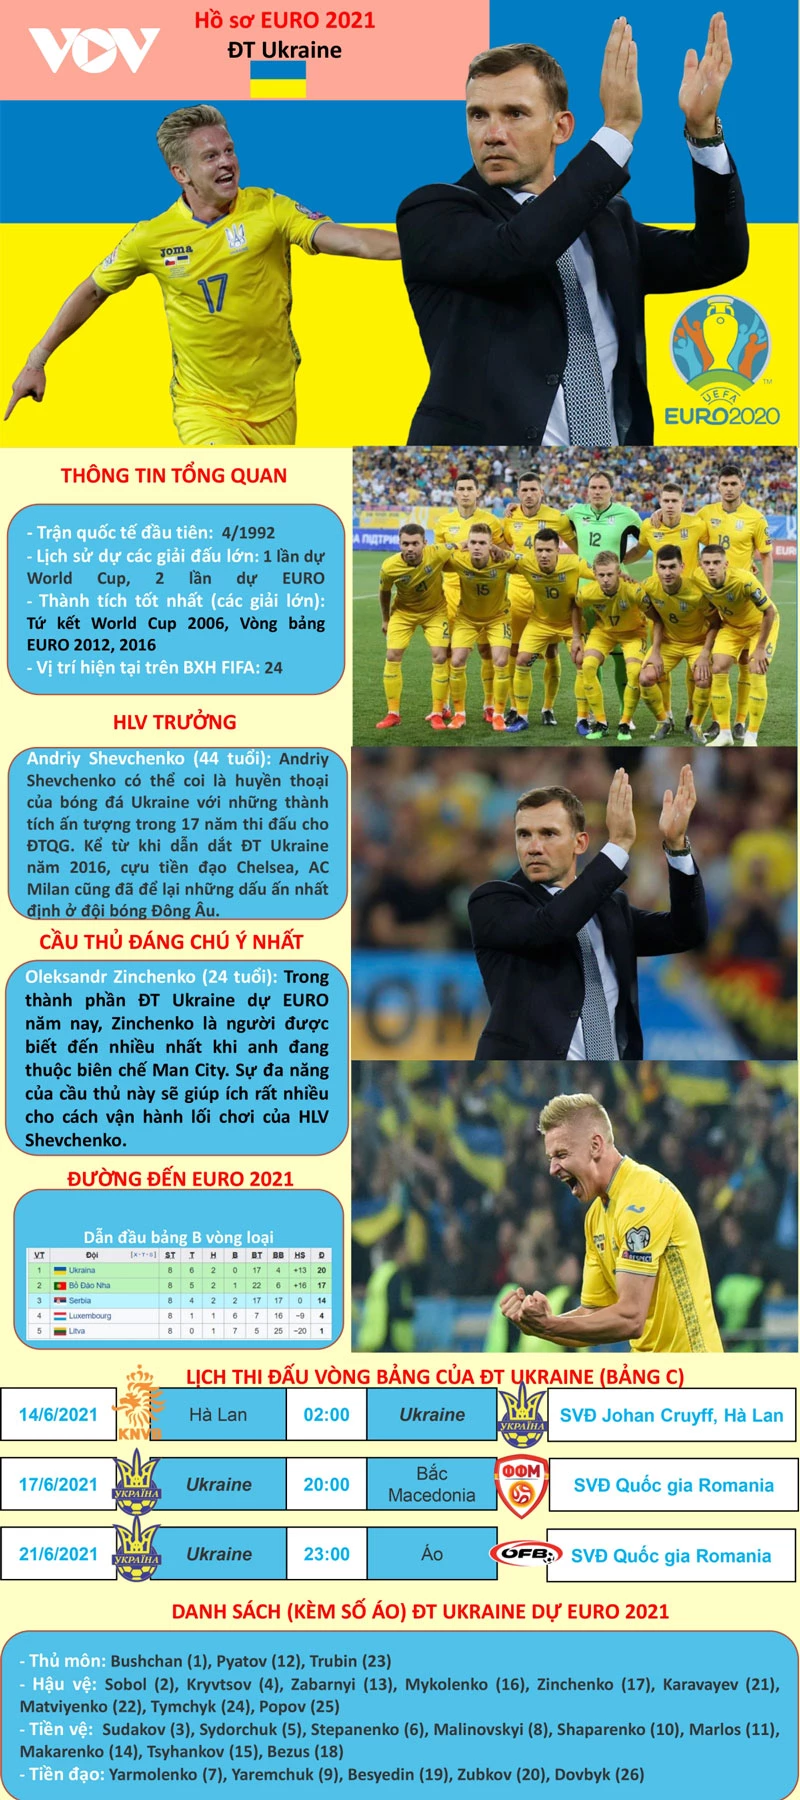 Những thông tin cần biết về đội tuyển Ukraine.